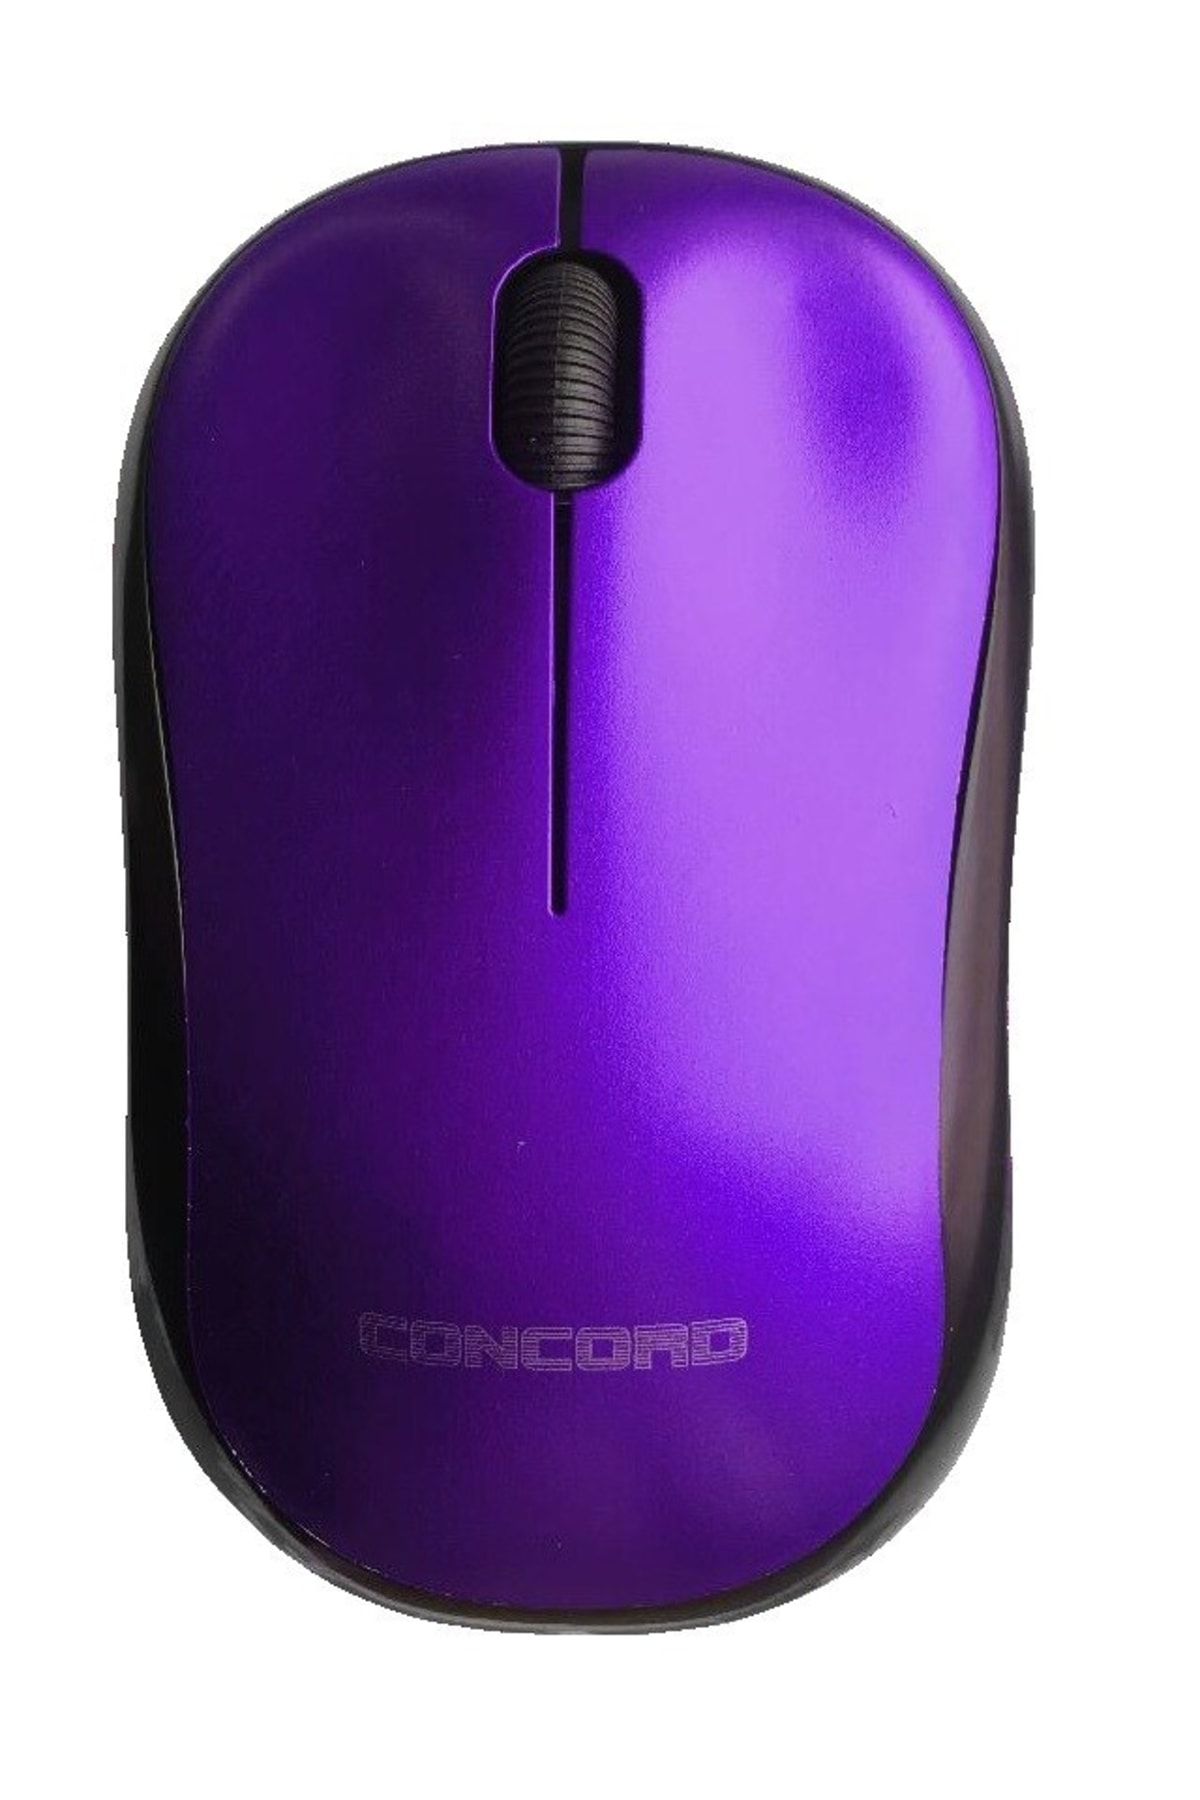 Concord Wireless Mouse 1200 Dpi C13